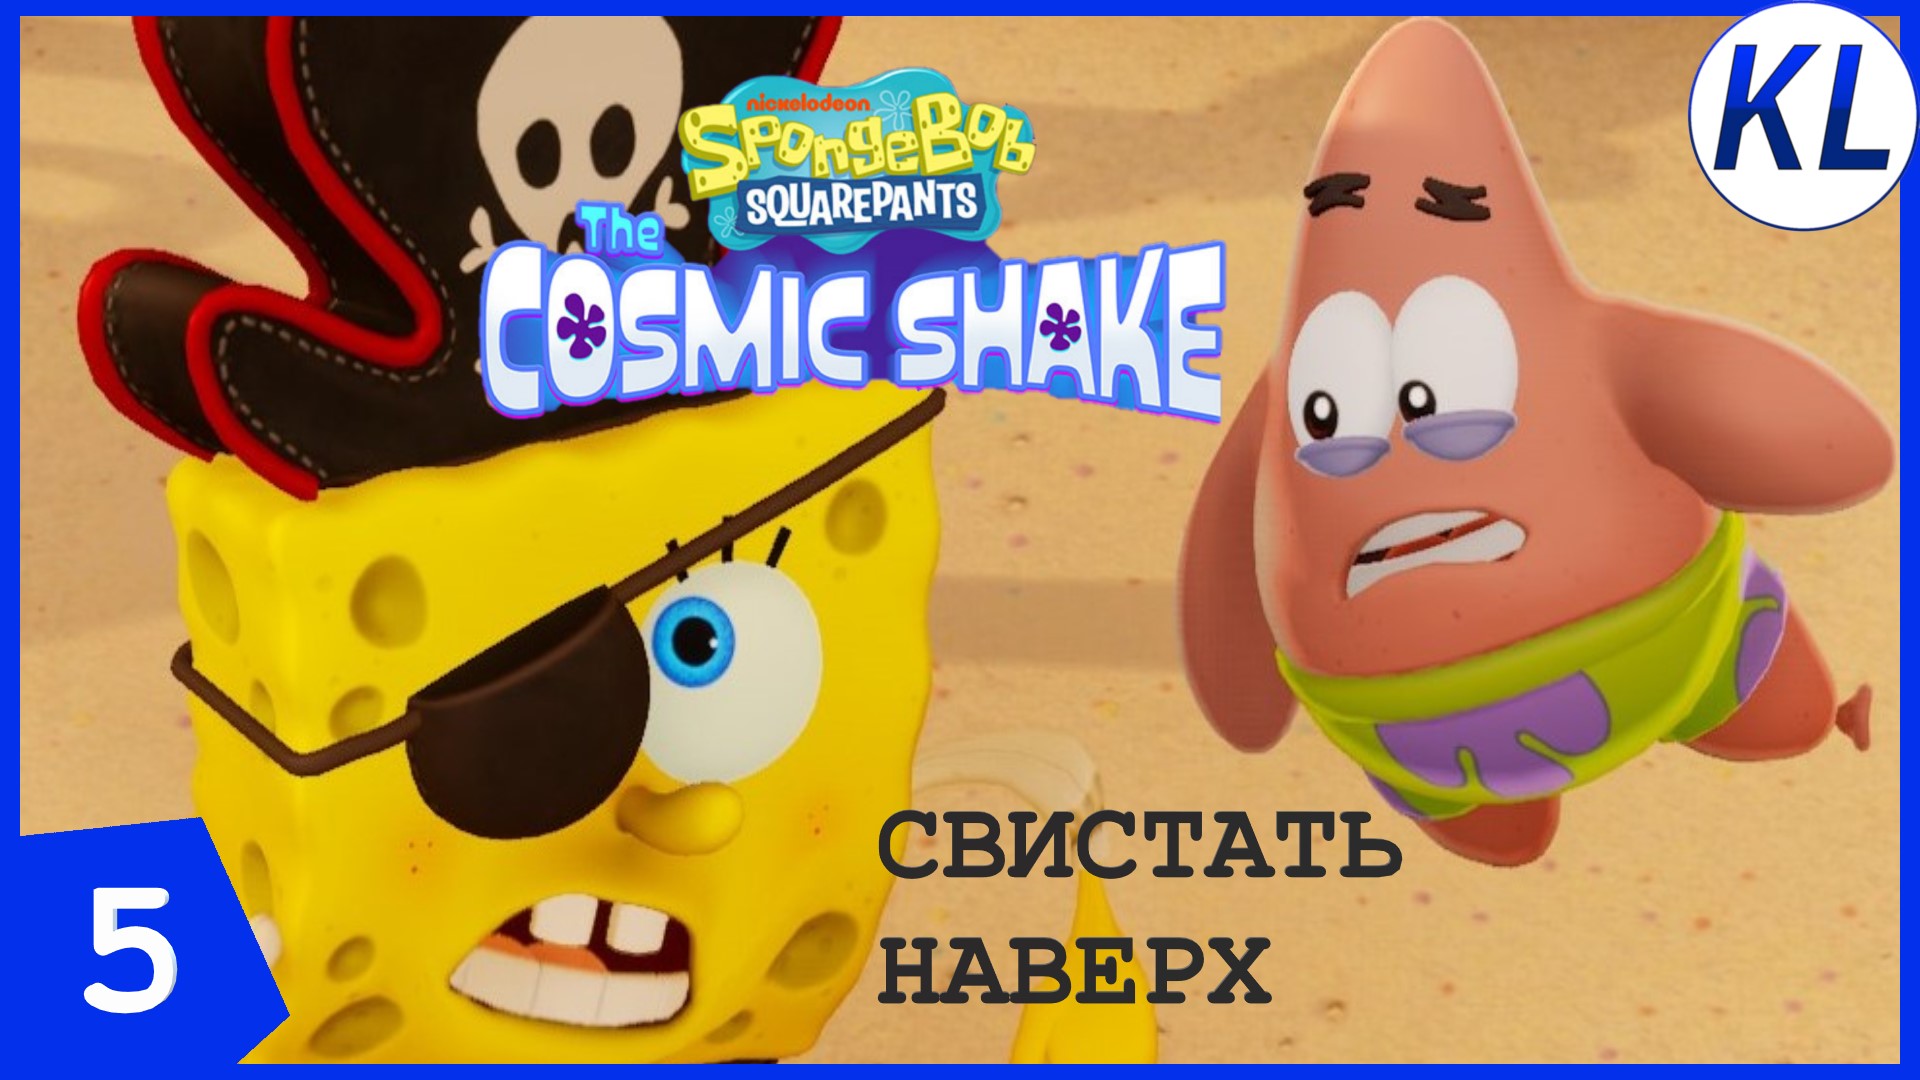 СВИСТАТЬ ВСЕХ ПРОТИВ КРЕВЕТКИ! SpongeBob SquarePants: The Cosmic Shake #5 ПРОХОЖДЕНИЕ